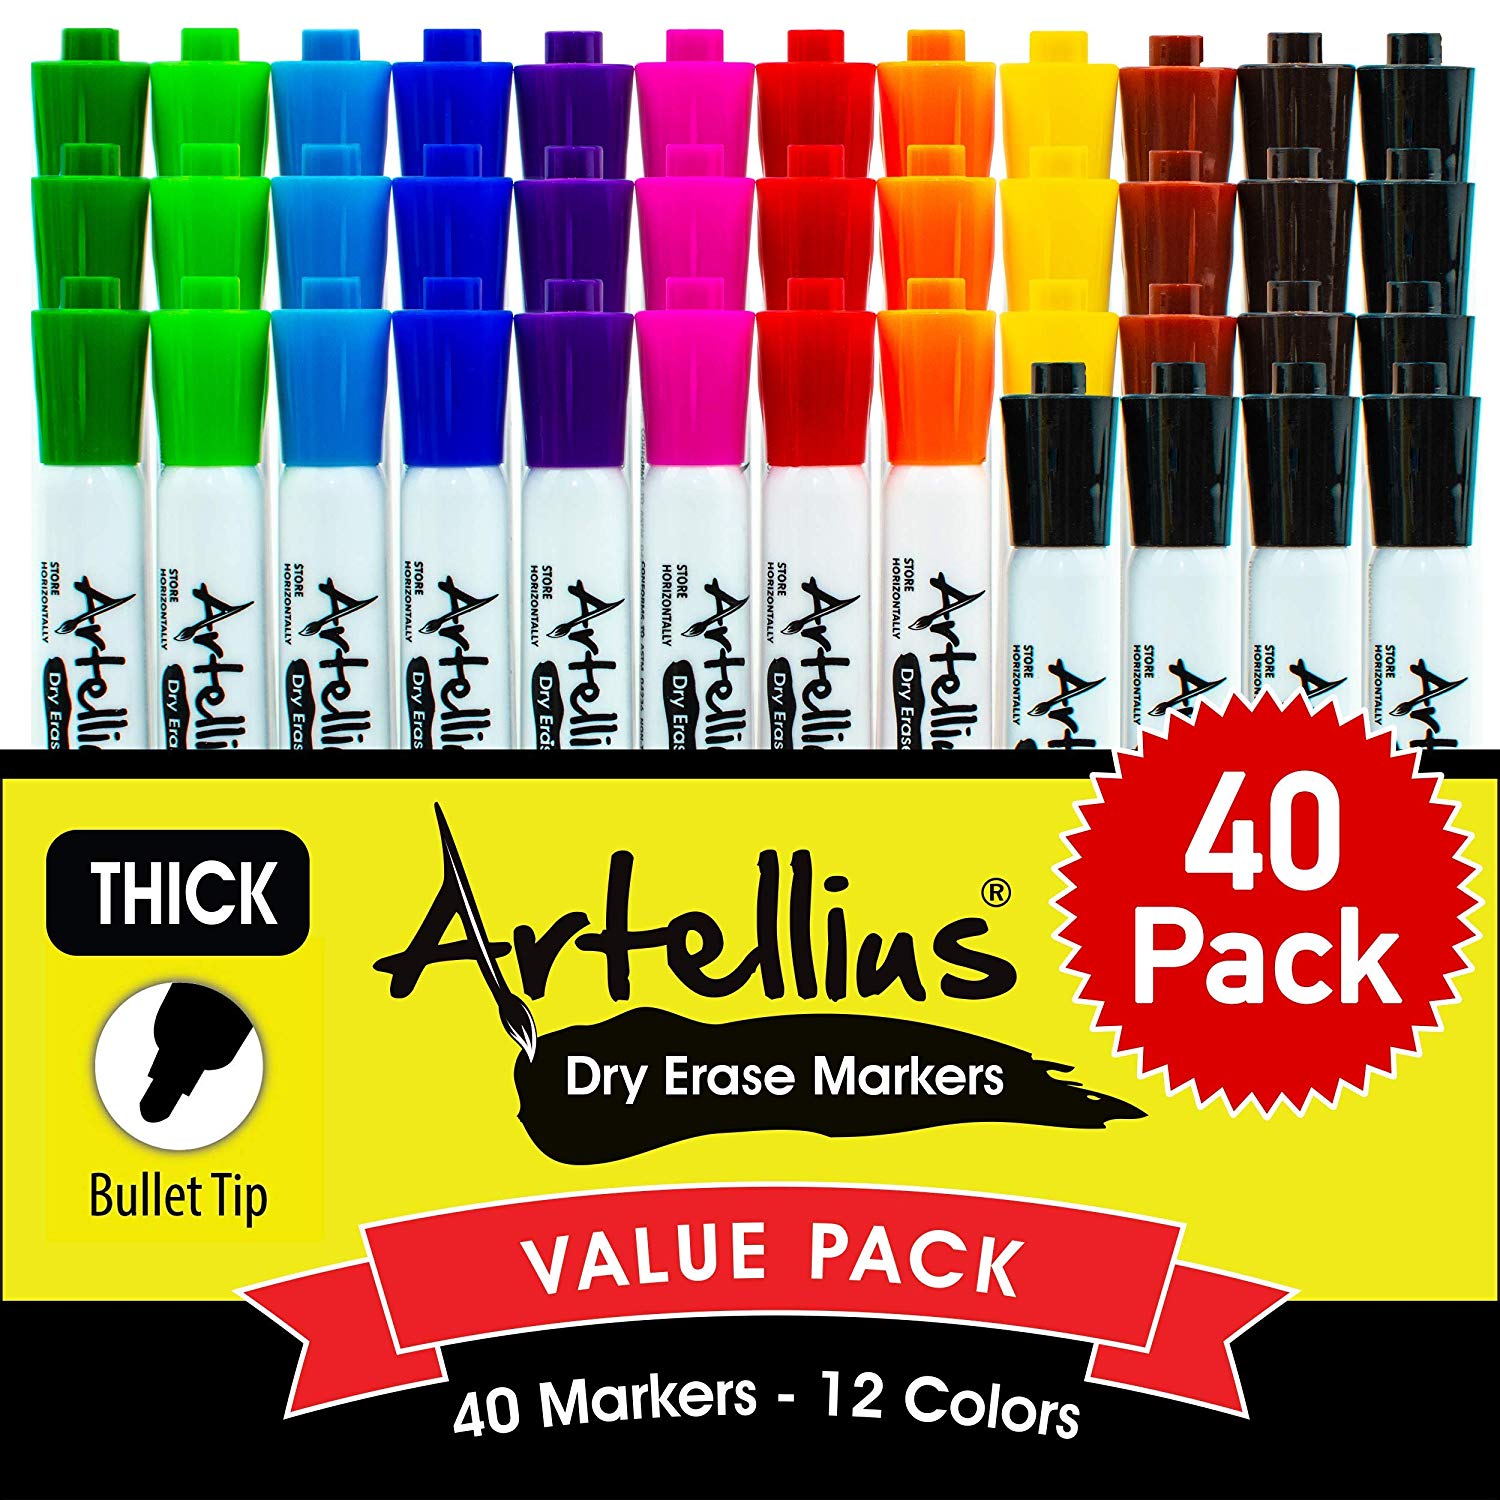 Artellius Kid-Safe Dry Erase Markers, 40-Count